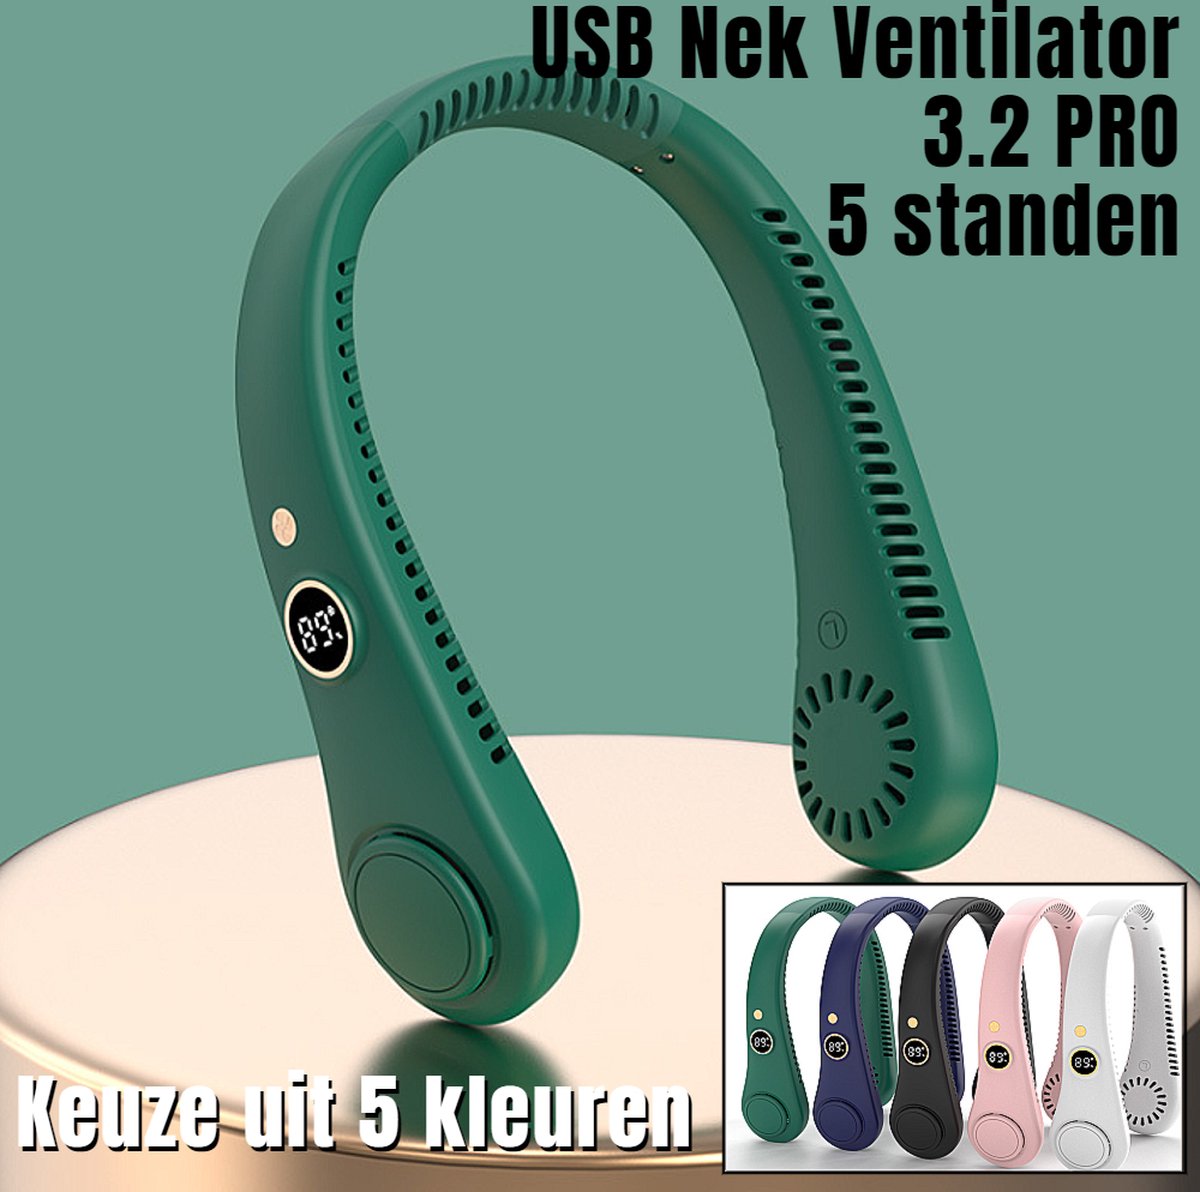 Allernieuwste.nl® USB Nek Ventilator 3.2 PRO met 5 STANDEN en Digitaal Display - Bladloze Nekventilator Hals Ventilator 5000mAh - 21 x 16.5 x 6 cm - GROEN